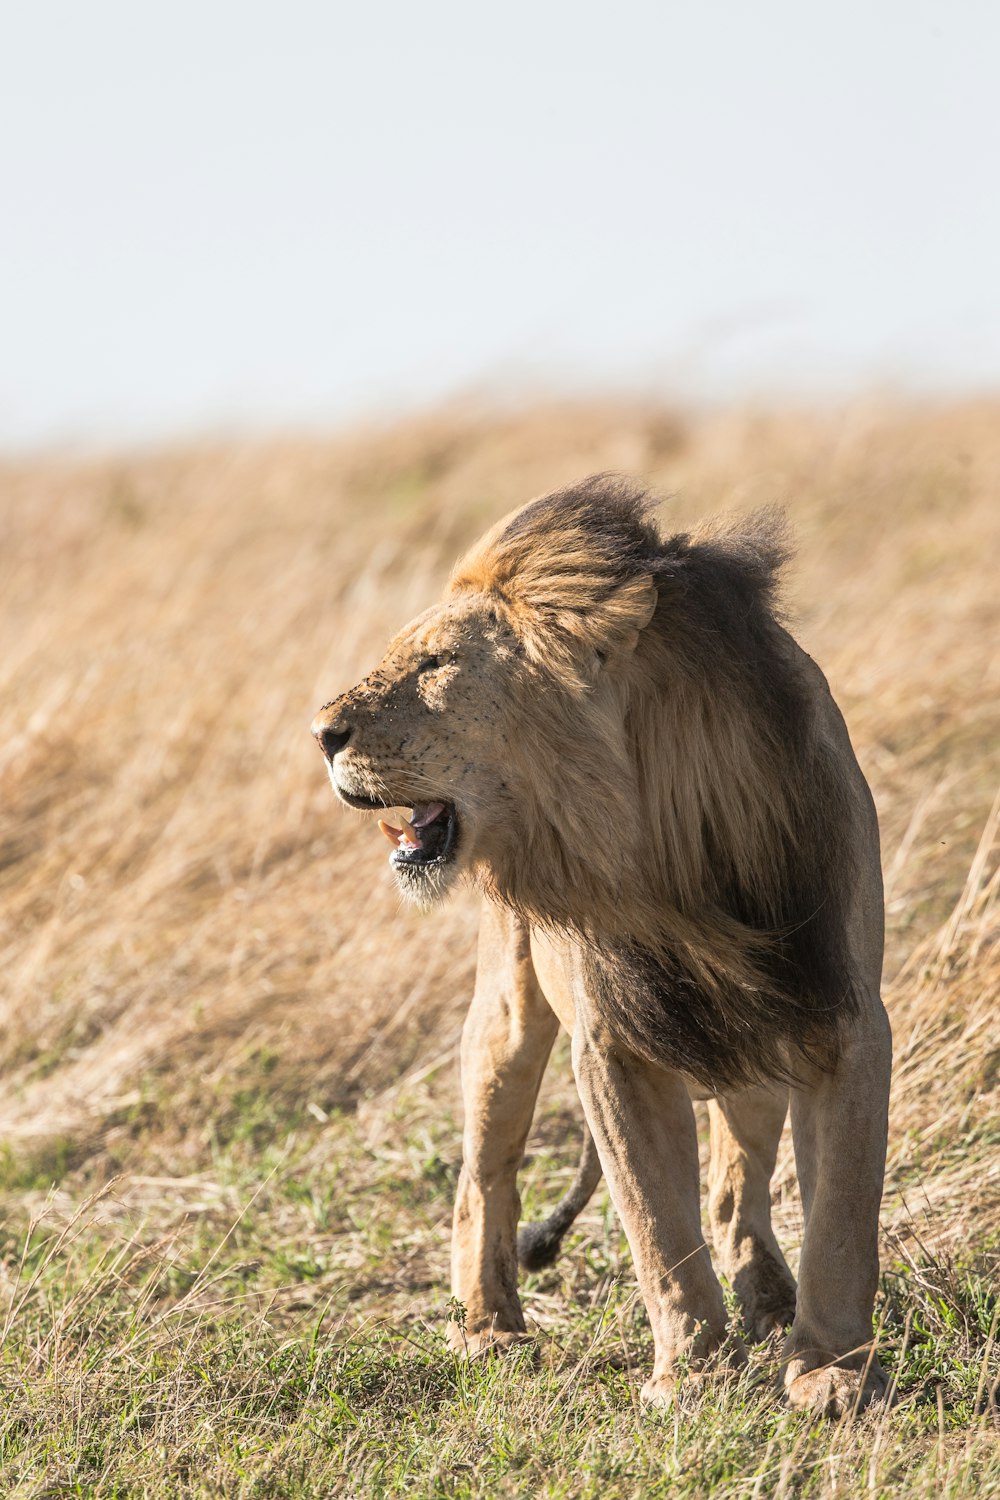 fotografia a fuoco superficiale del leone alla fauna selvatica